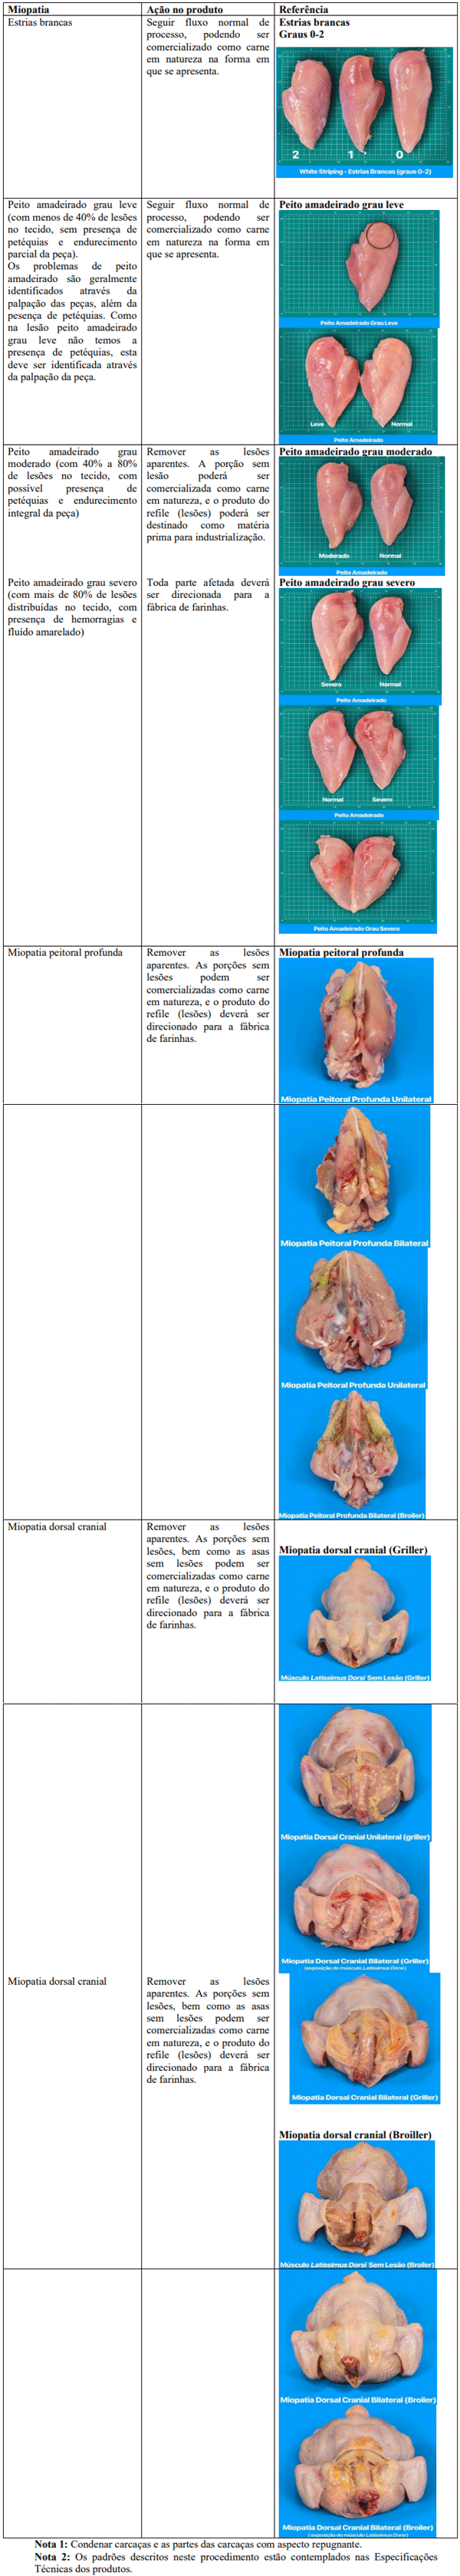 Tabela 1 – Monitoramento de miopatias, ações que devem ser tomadas quando encontradas nas carcaças e respectivas musculaturas e a imagem representativa de cada uma